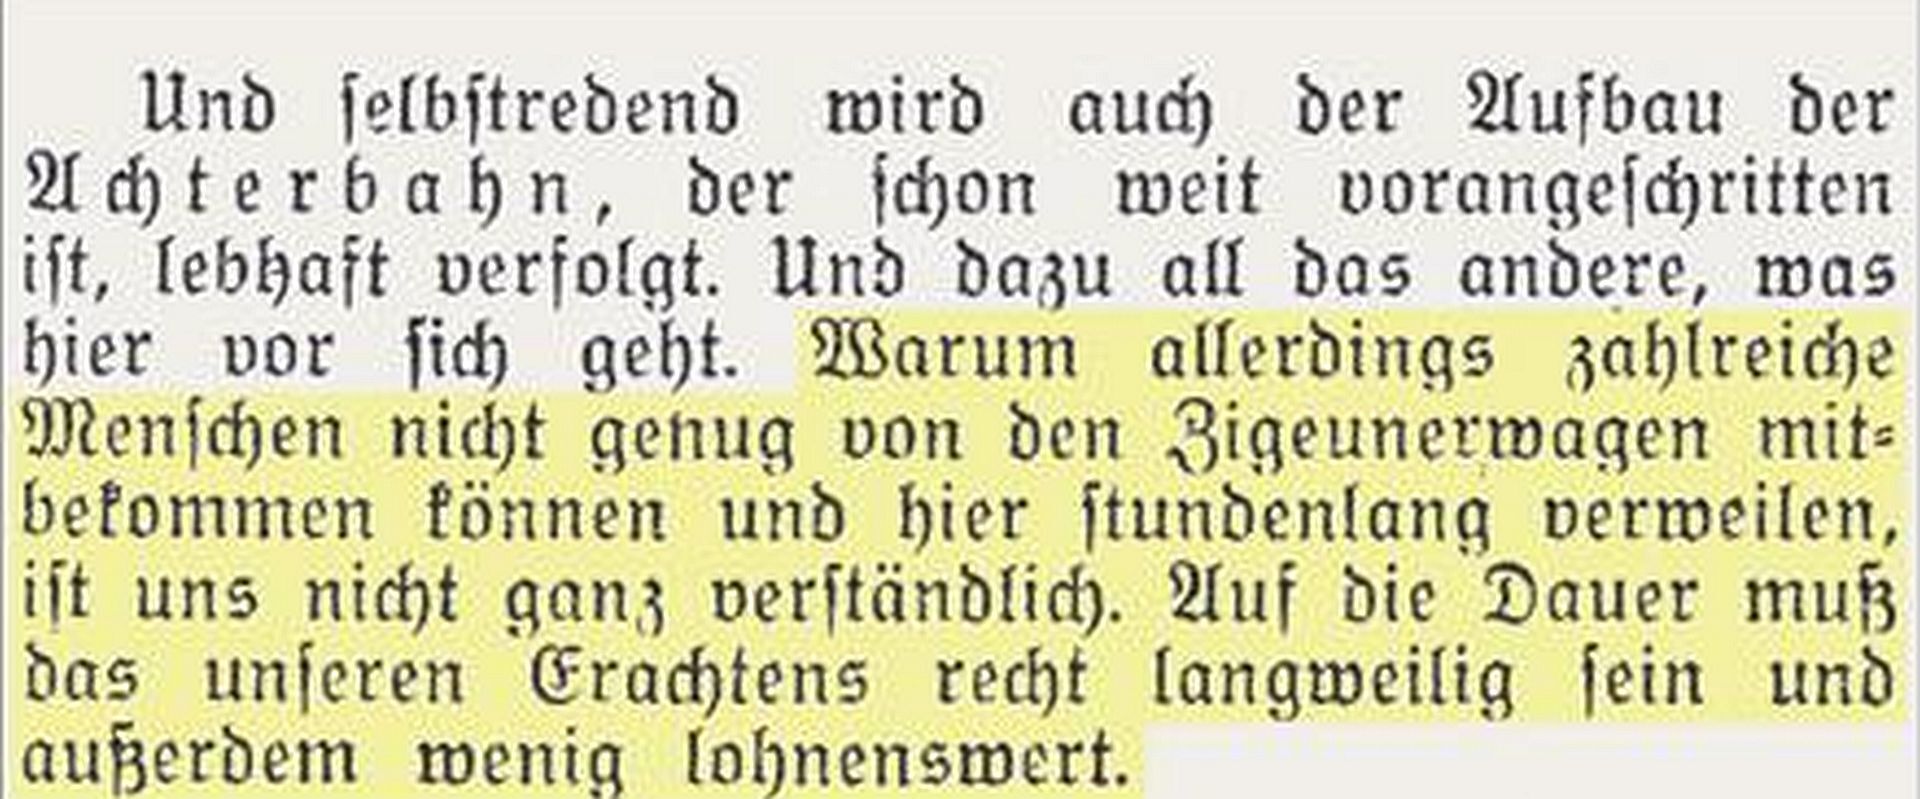 Westfälische Landeszeitung Rote Erde vom 10.08.1938.jpg